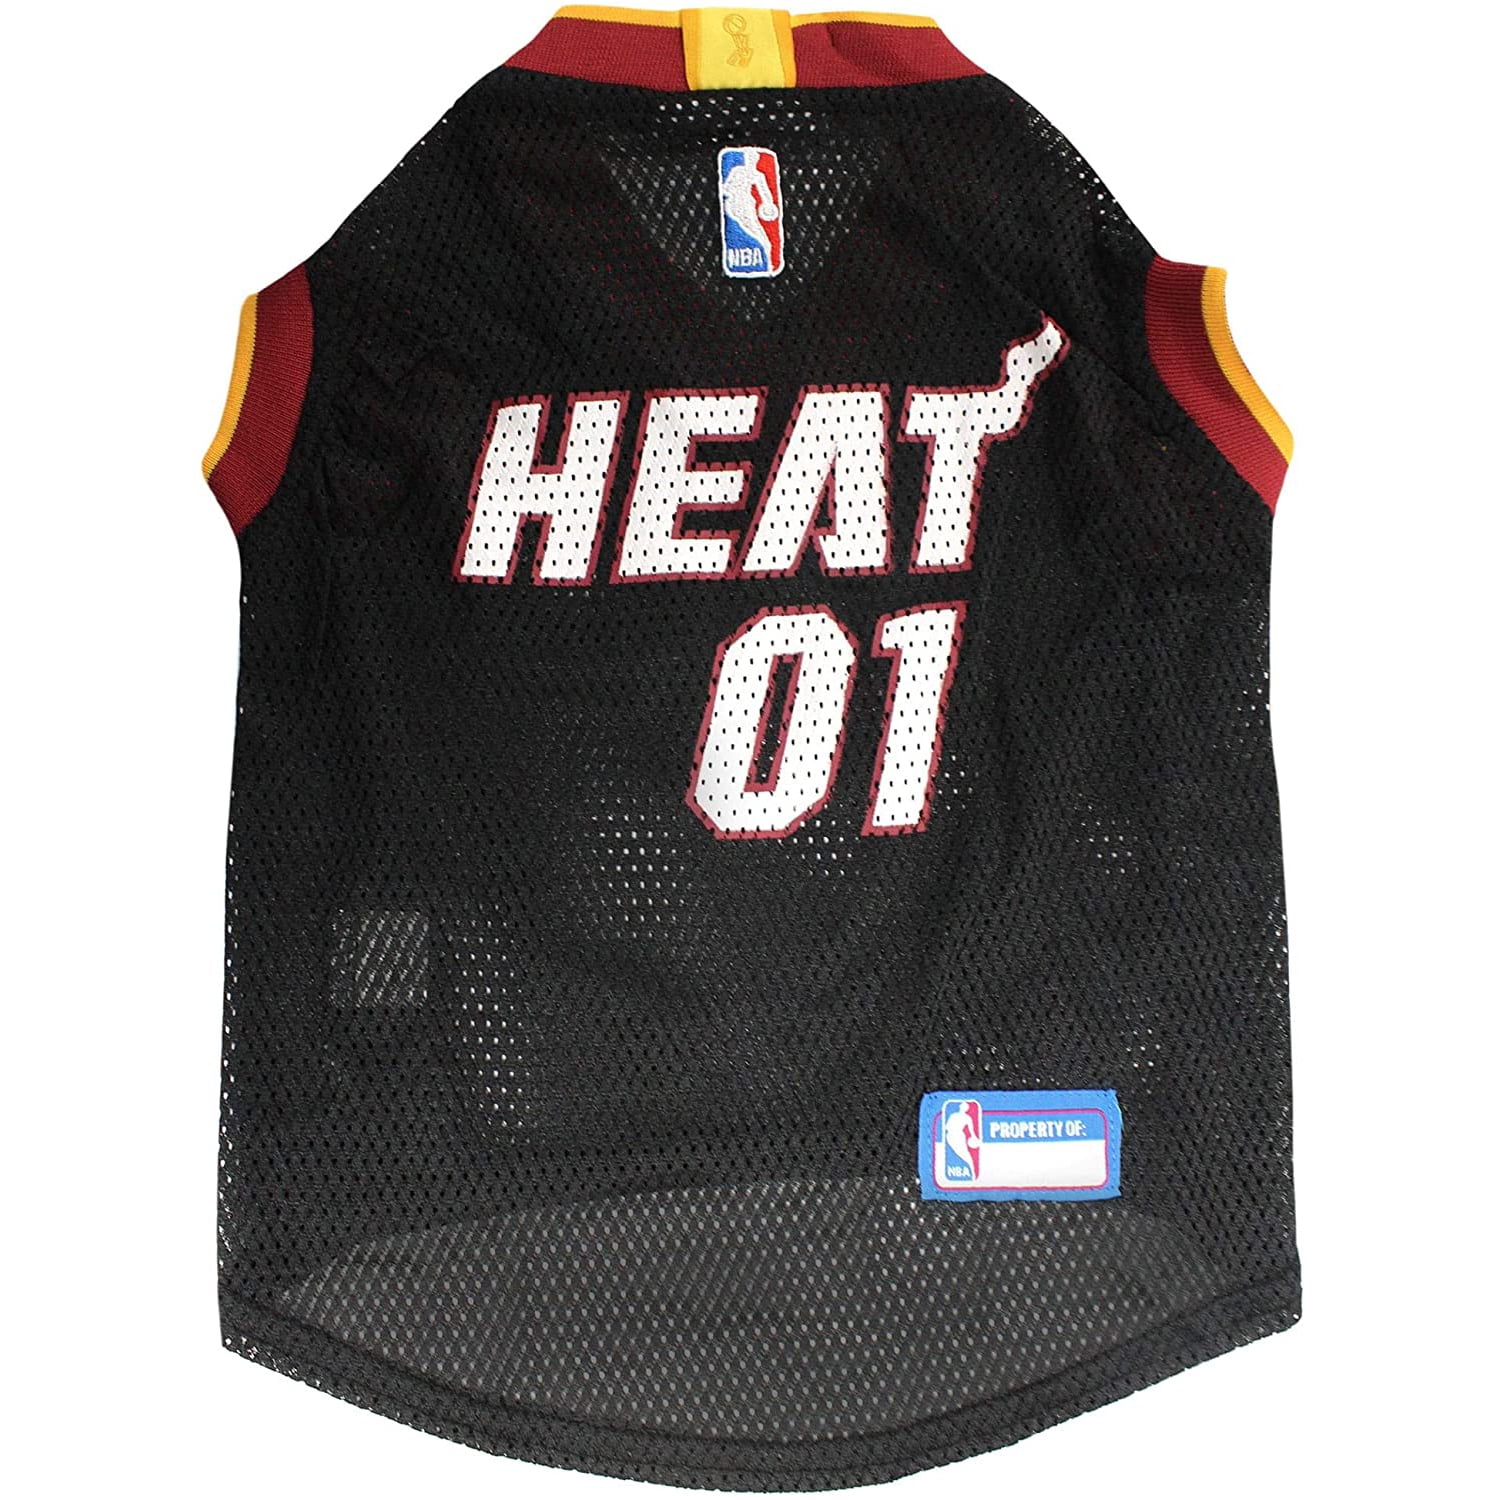 Miami Heat Mesh Dog Basketball Jersey Size: Large